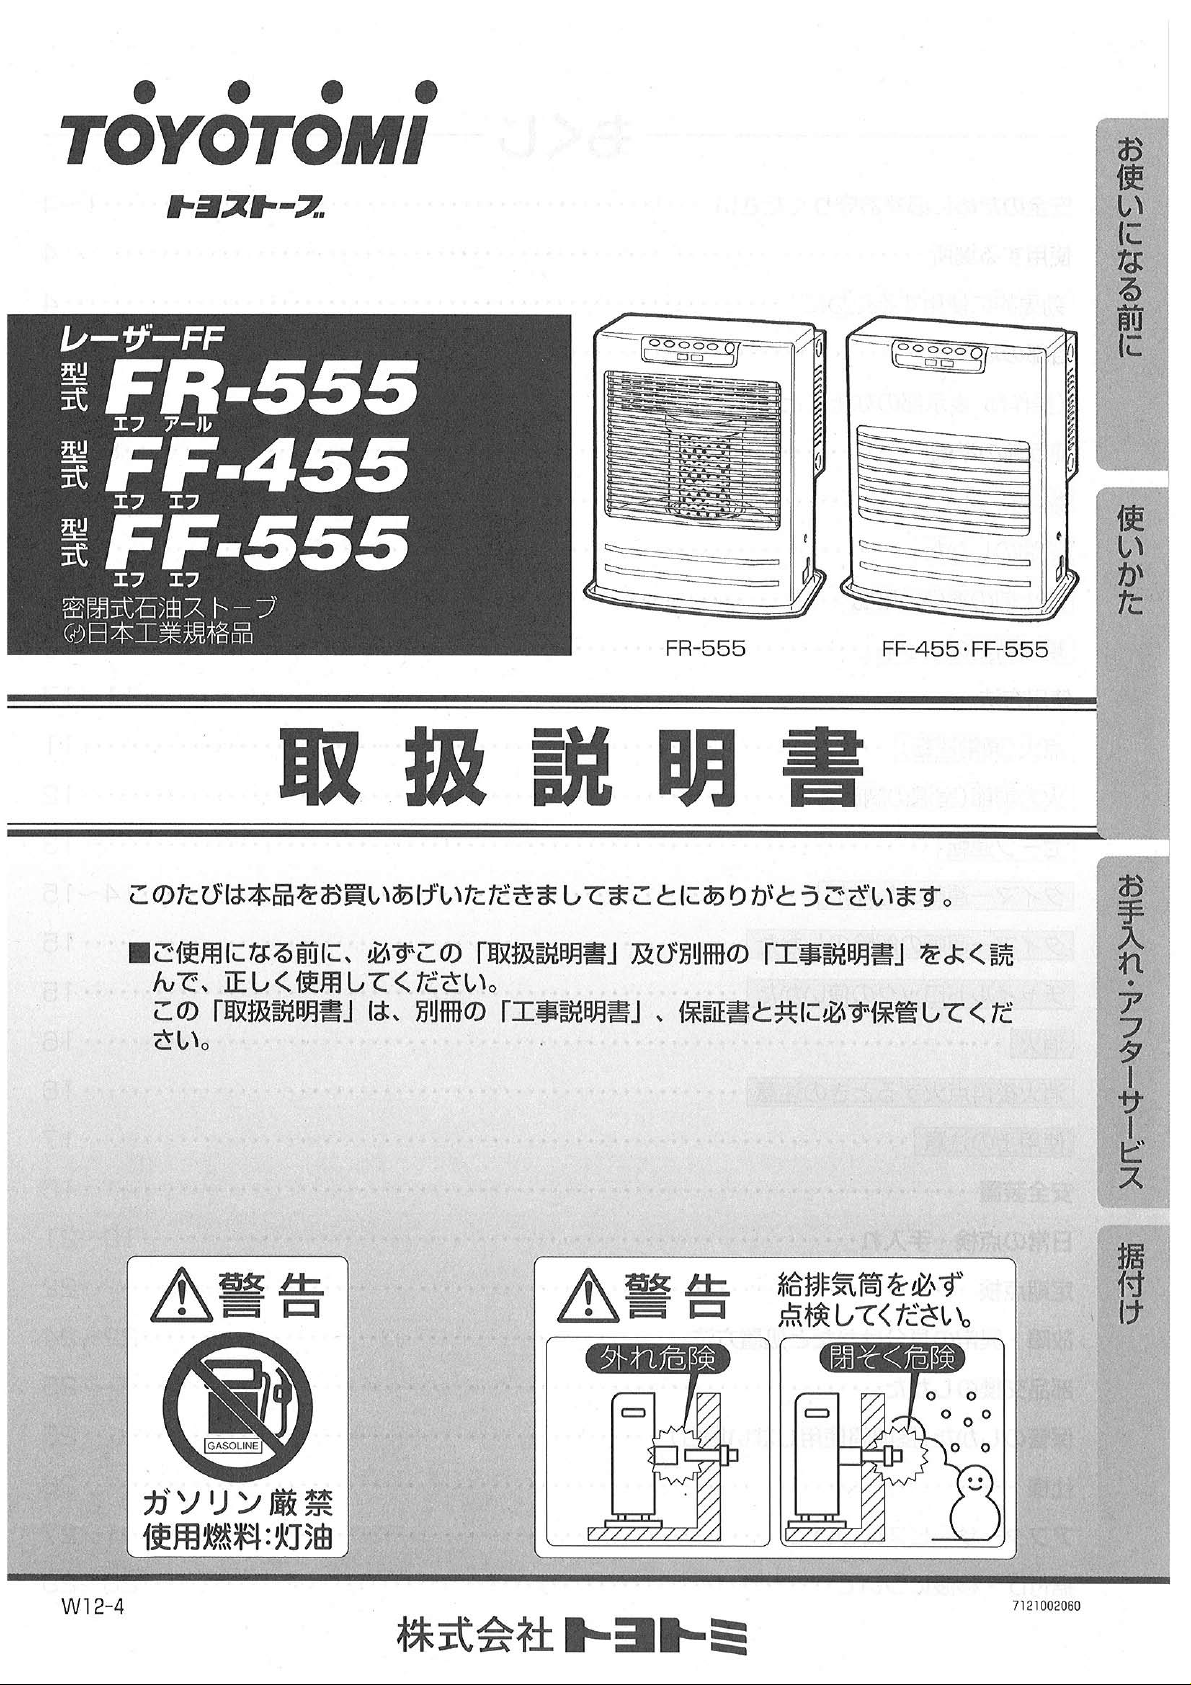 説明書 トヨトミ FF-455 ヒーター